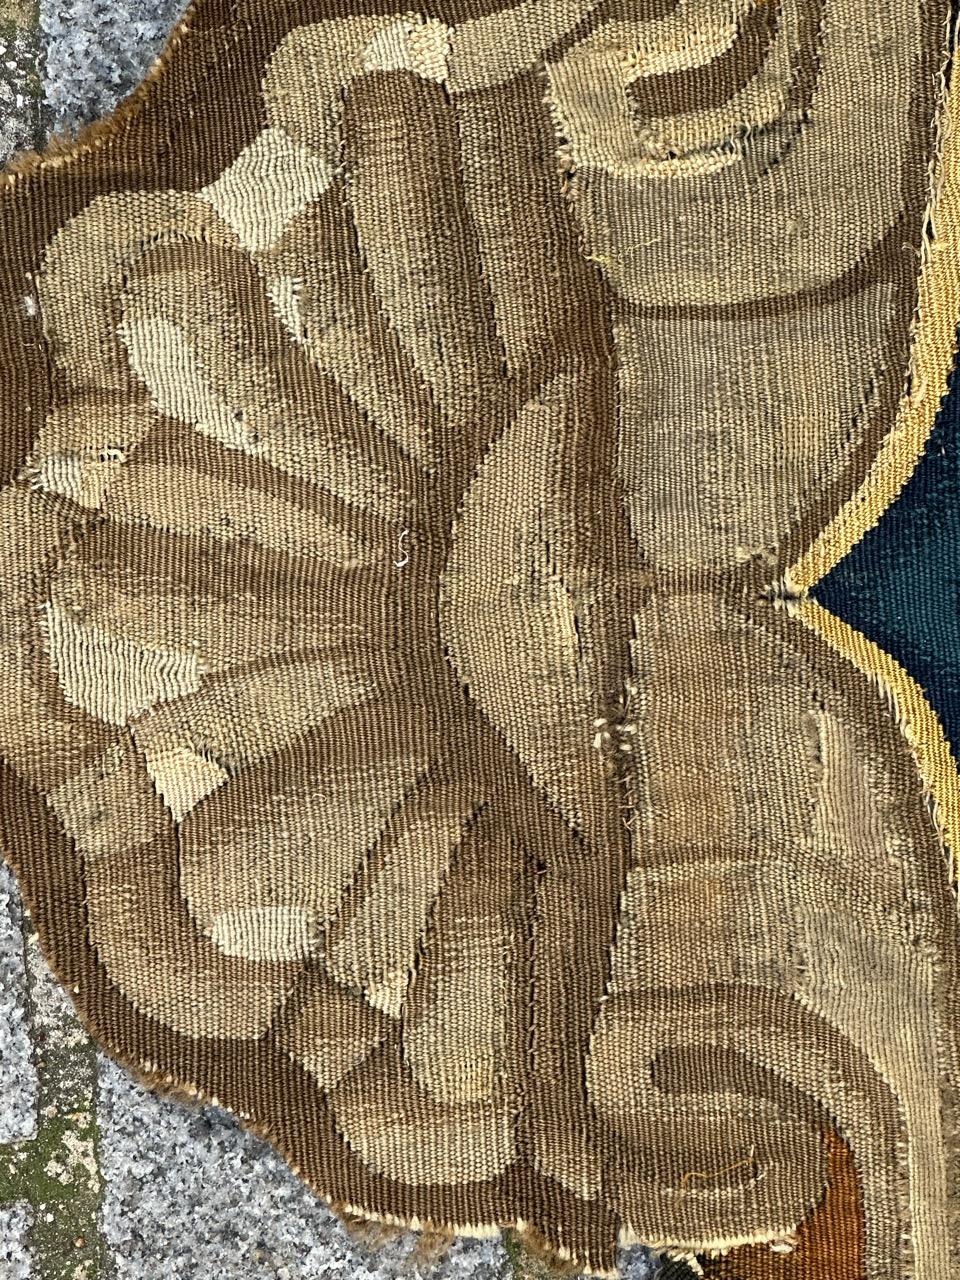 Très beau fragment de tapisserie belge de Bruxelles du 17ème siècle avec de belles couleurs, peut être utilisé pour un document ou être encadré.